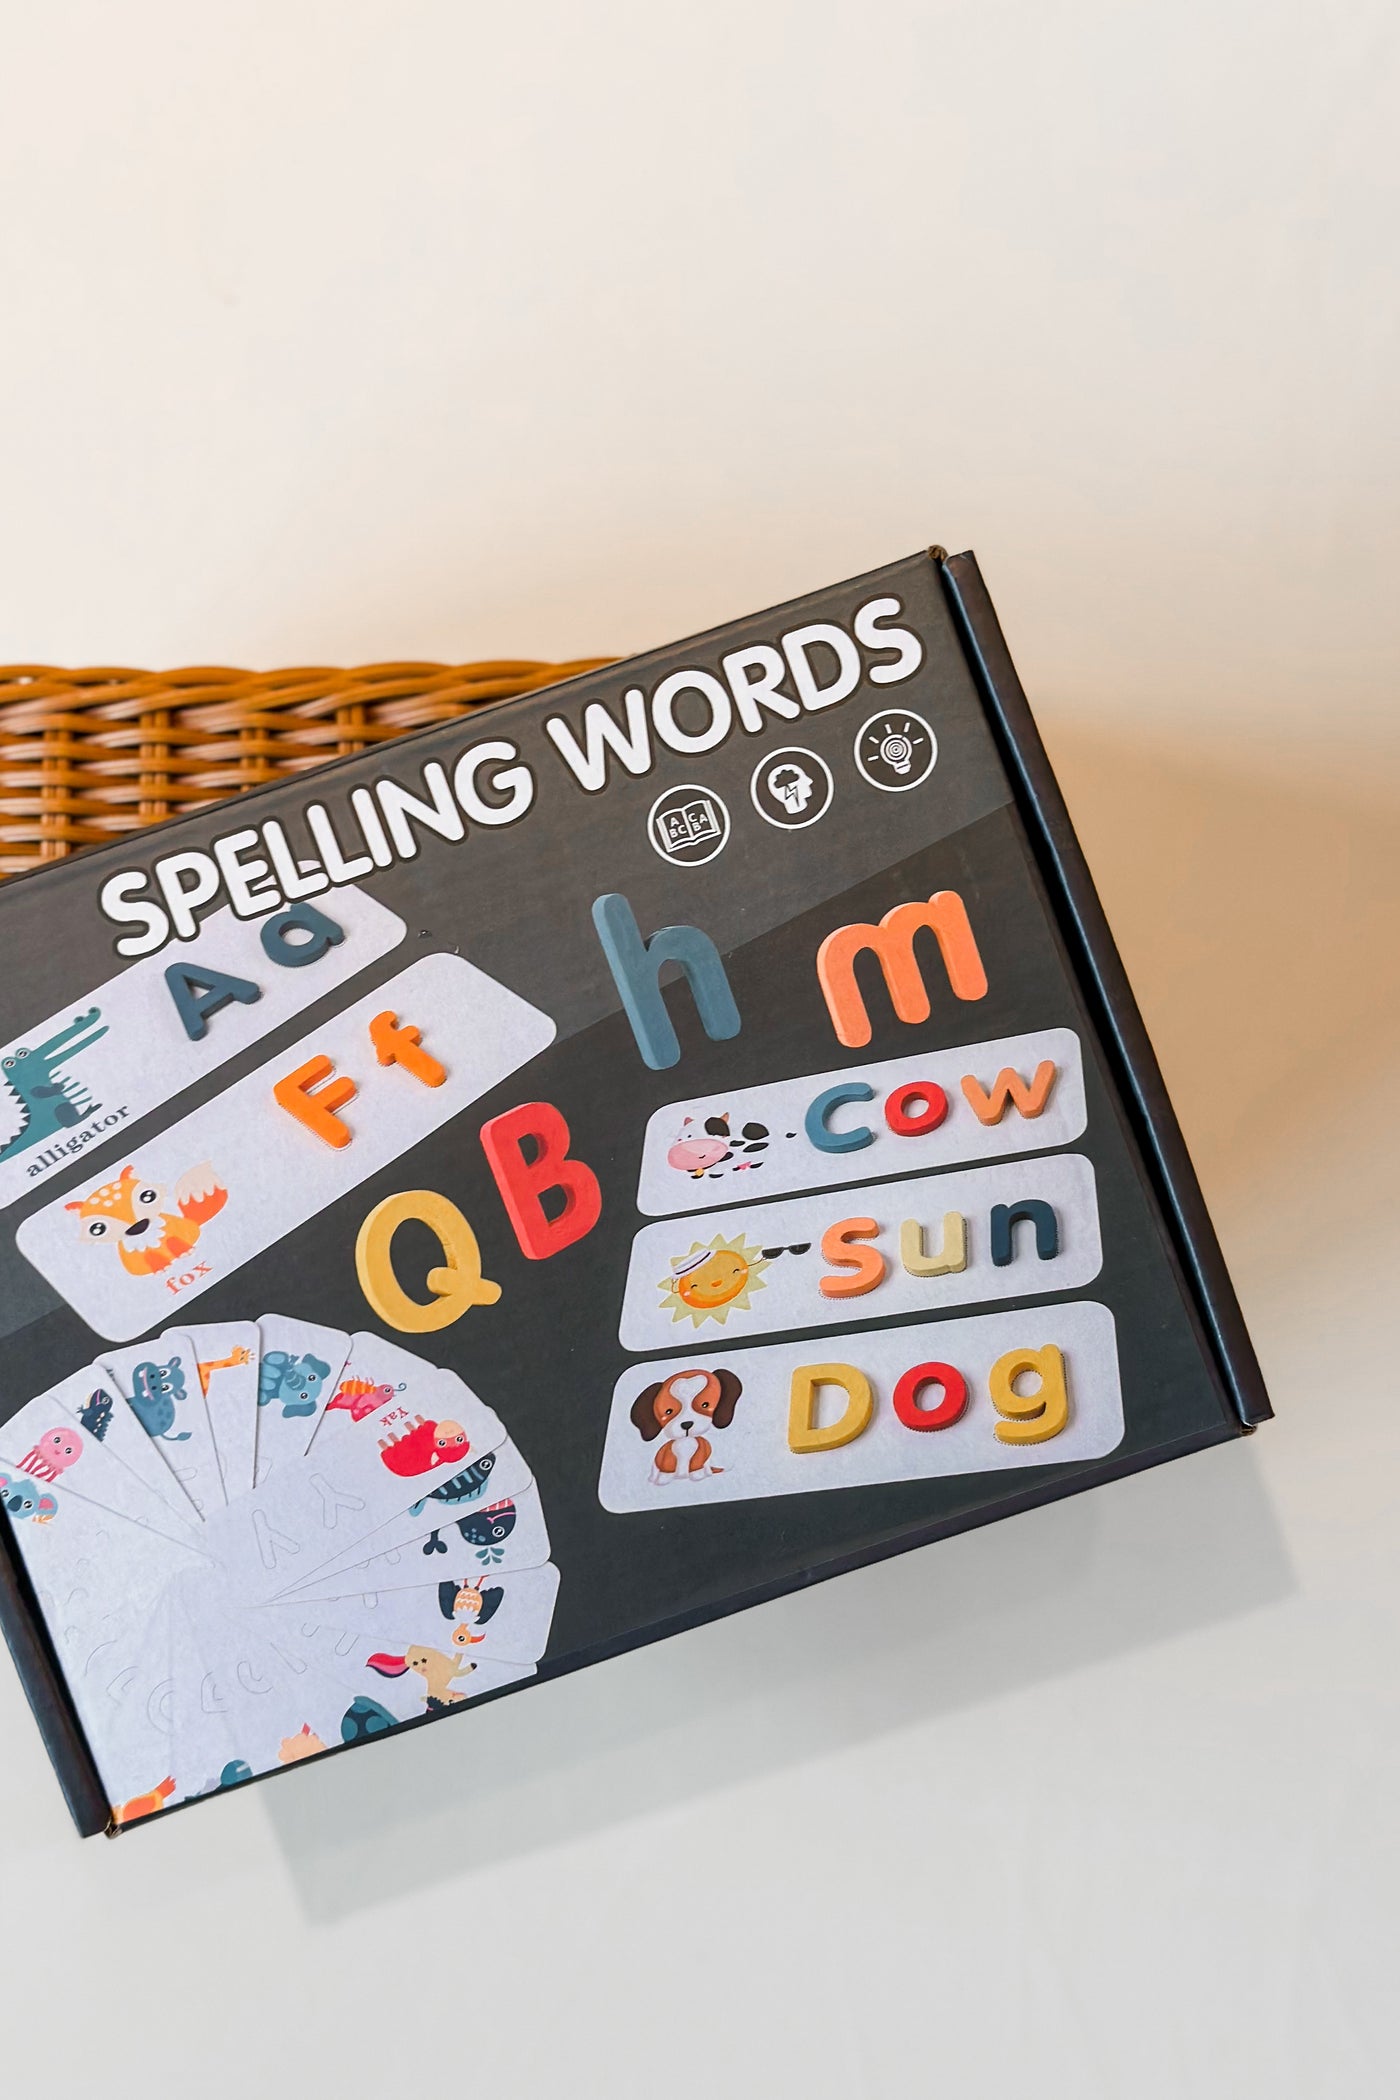 Spelling Words Set